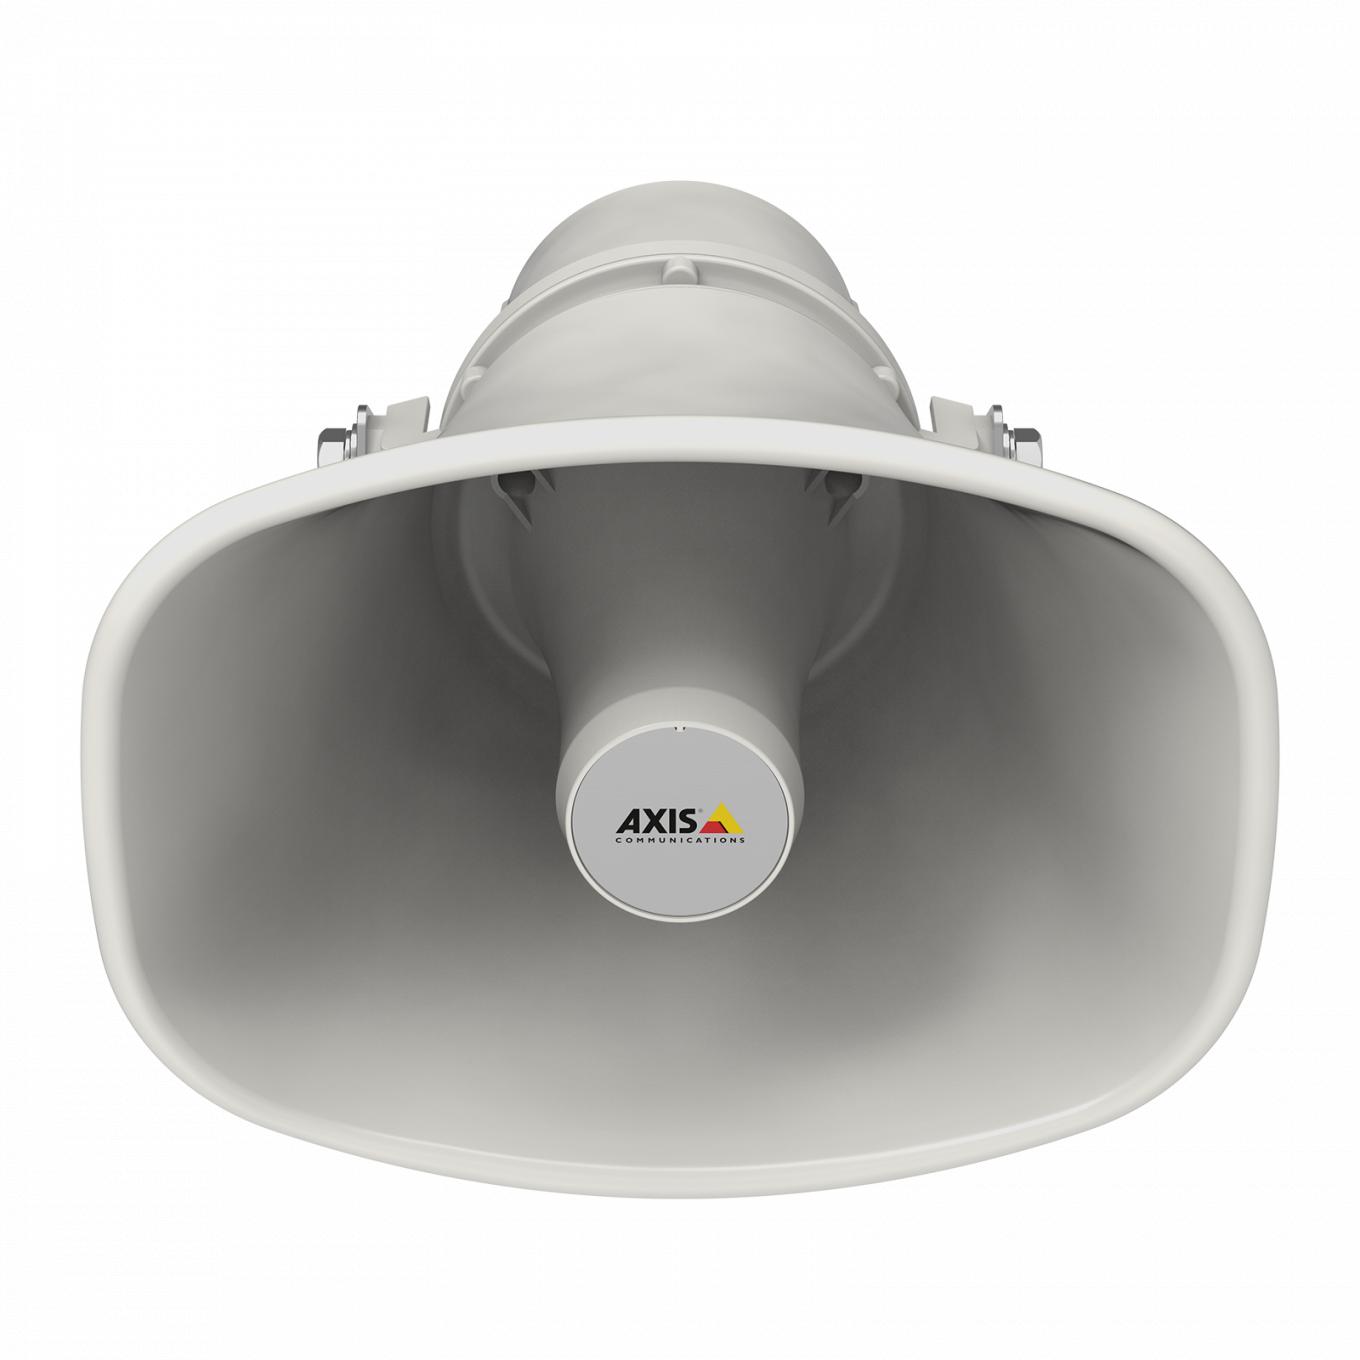 AXIS C1310-E Network Speaker dalla parte anteriore, inclinato verso il basso